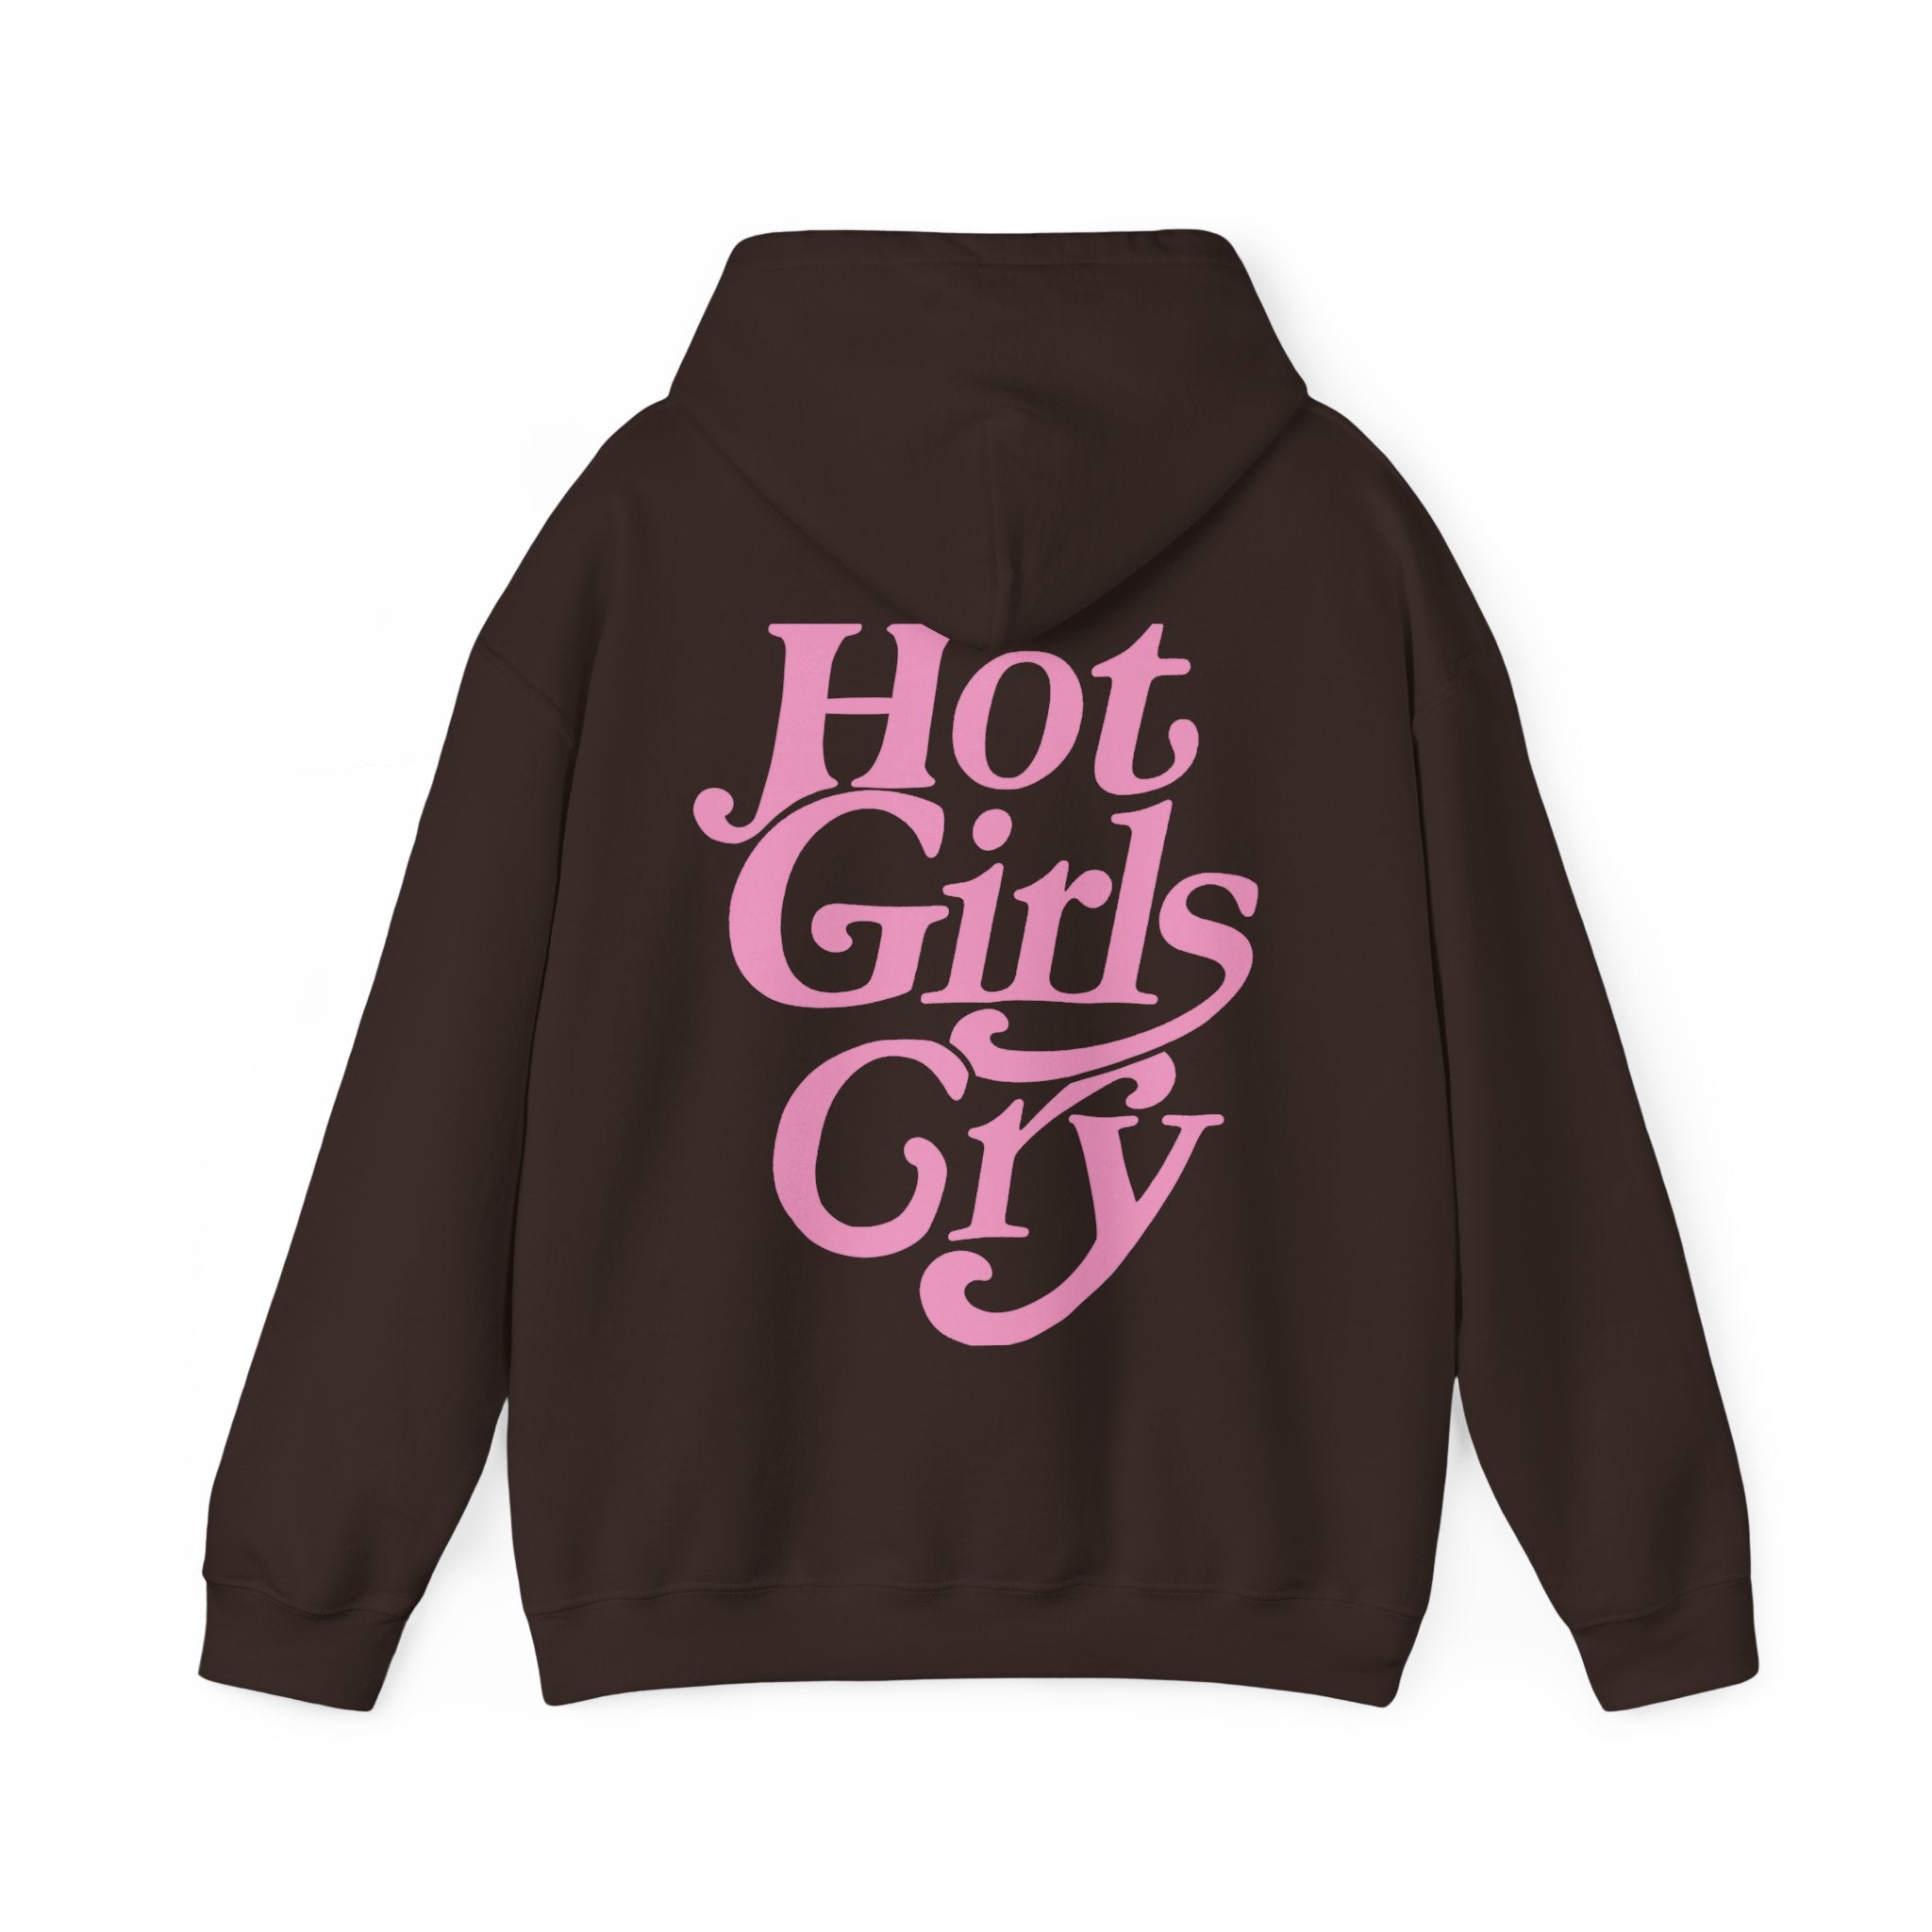 Hot Girls Cry - CheeryVibes